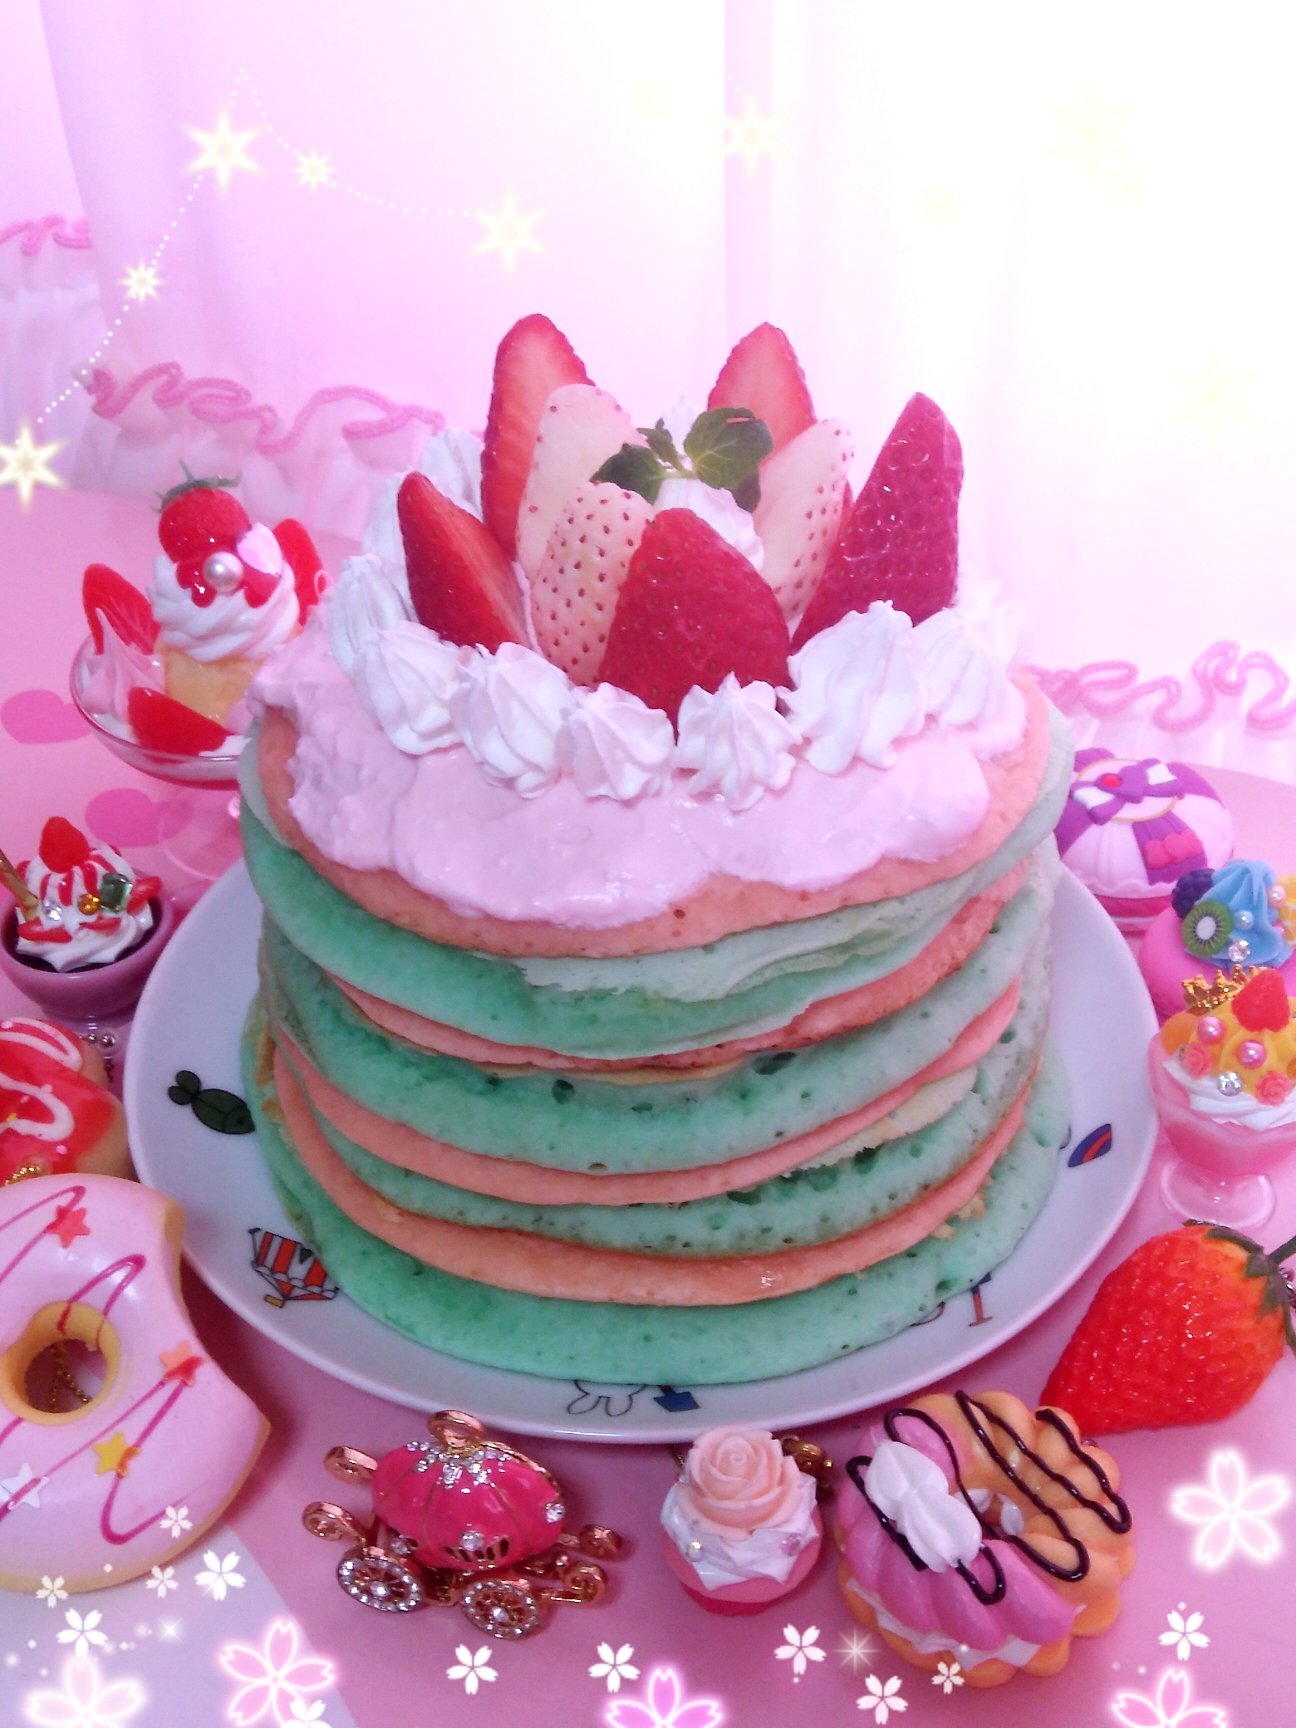 Twitter 上的 Himeno いちごのカラフルパンケーキを作ってみました いちご 白いちご ピンクのケーキ 青のケーキ パン ケーキ カラフルパンケーキ カラフル いちごのパンケーキ いちご大好き メルヘン ゆめかわいい かわいい食べ物 苺 甘党 T